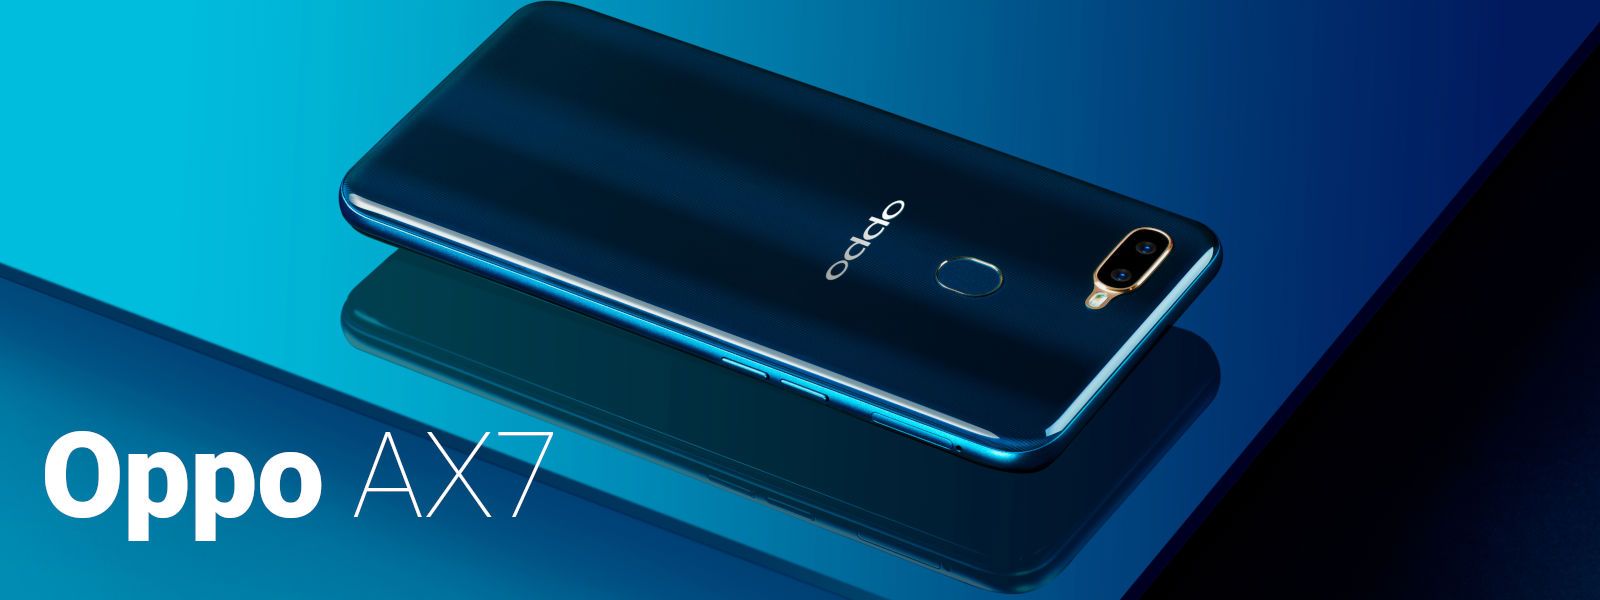 OPPO AX7 smarttelefon - fordeler og ulemper